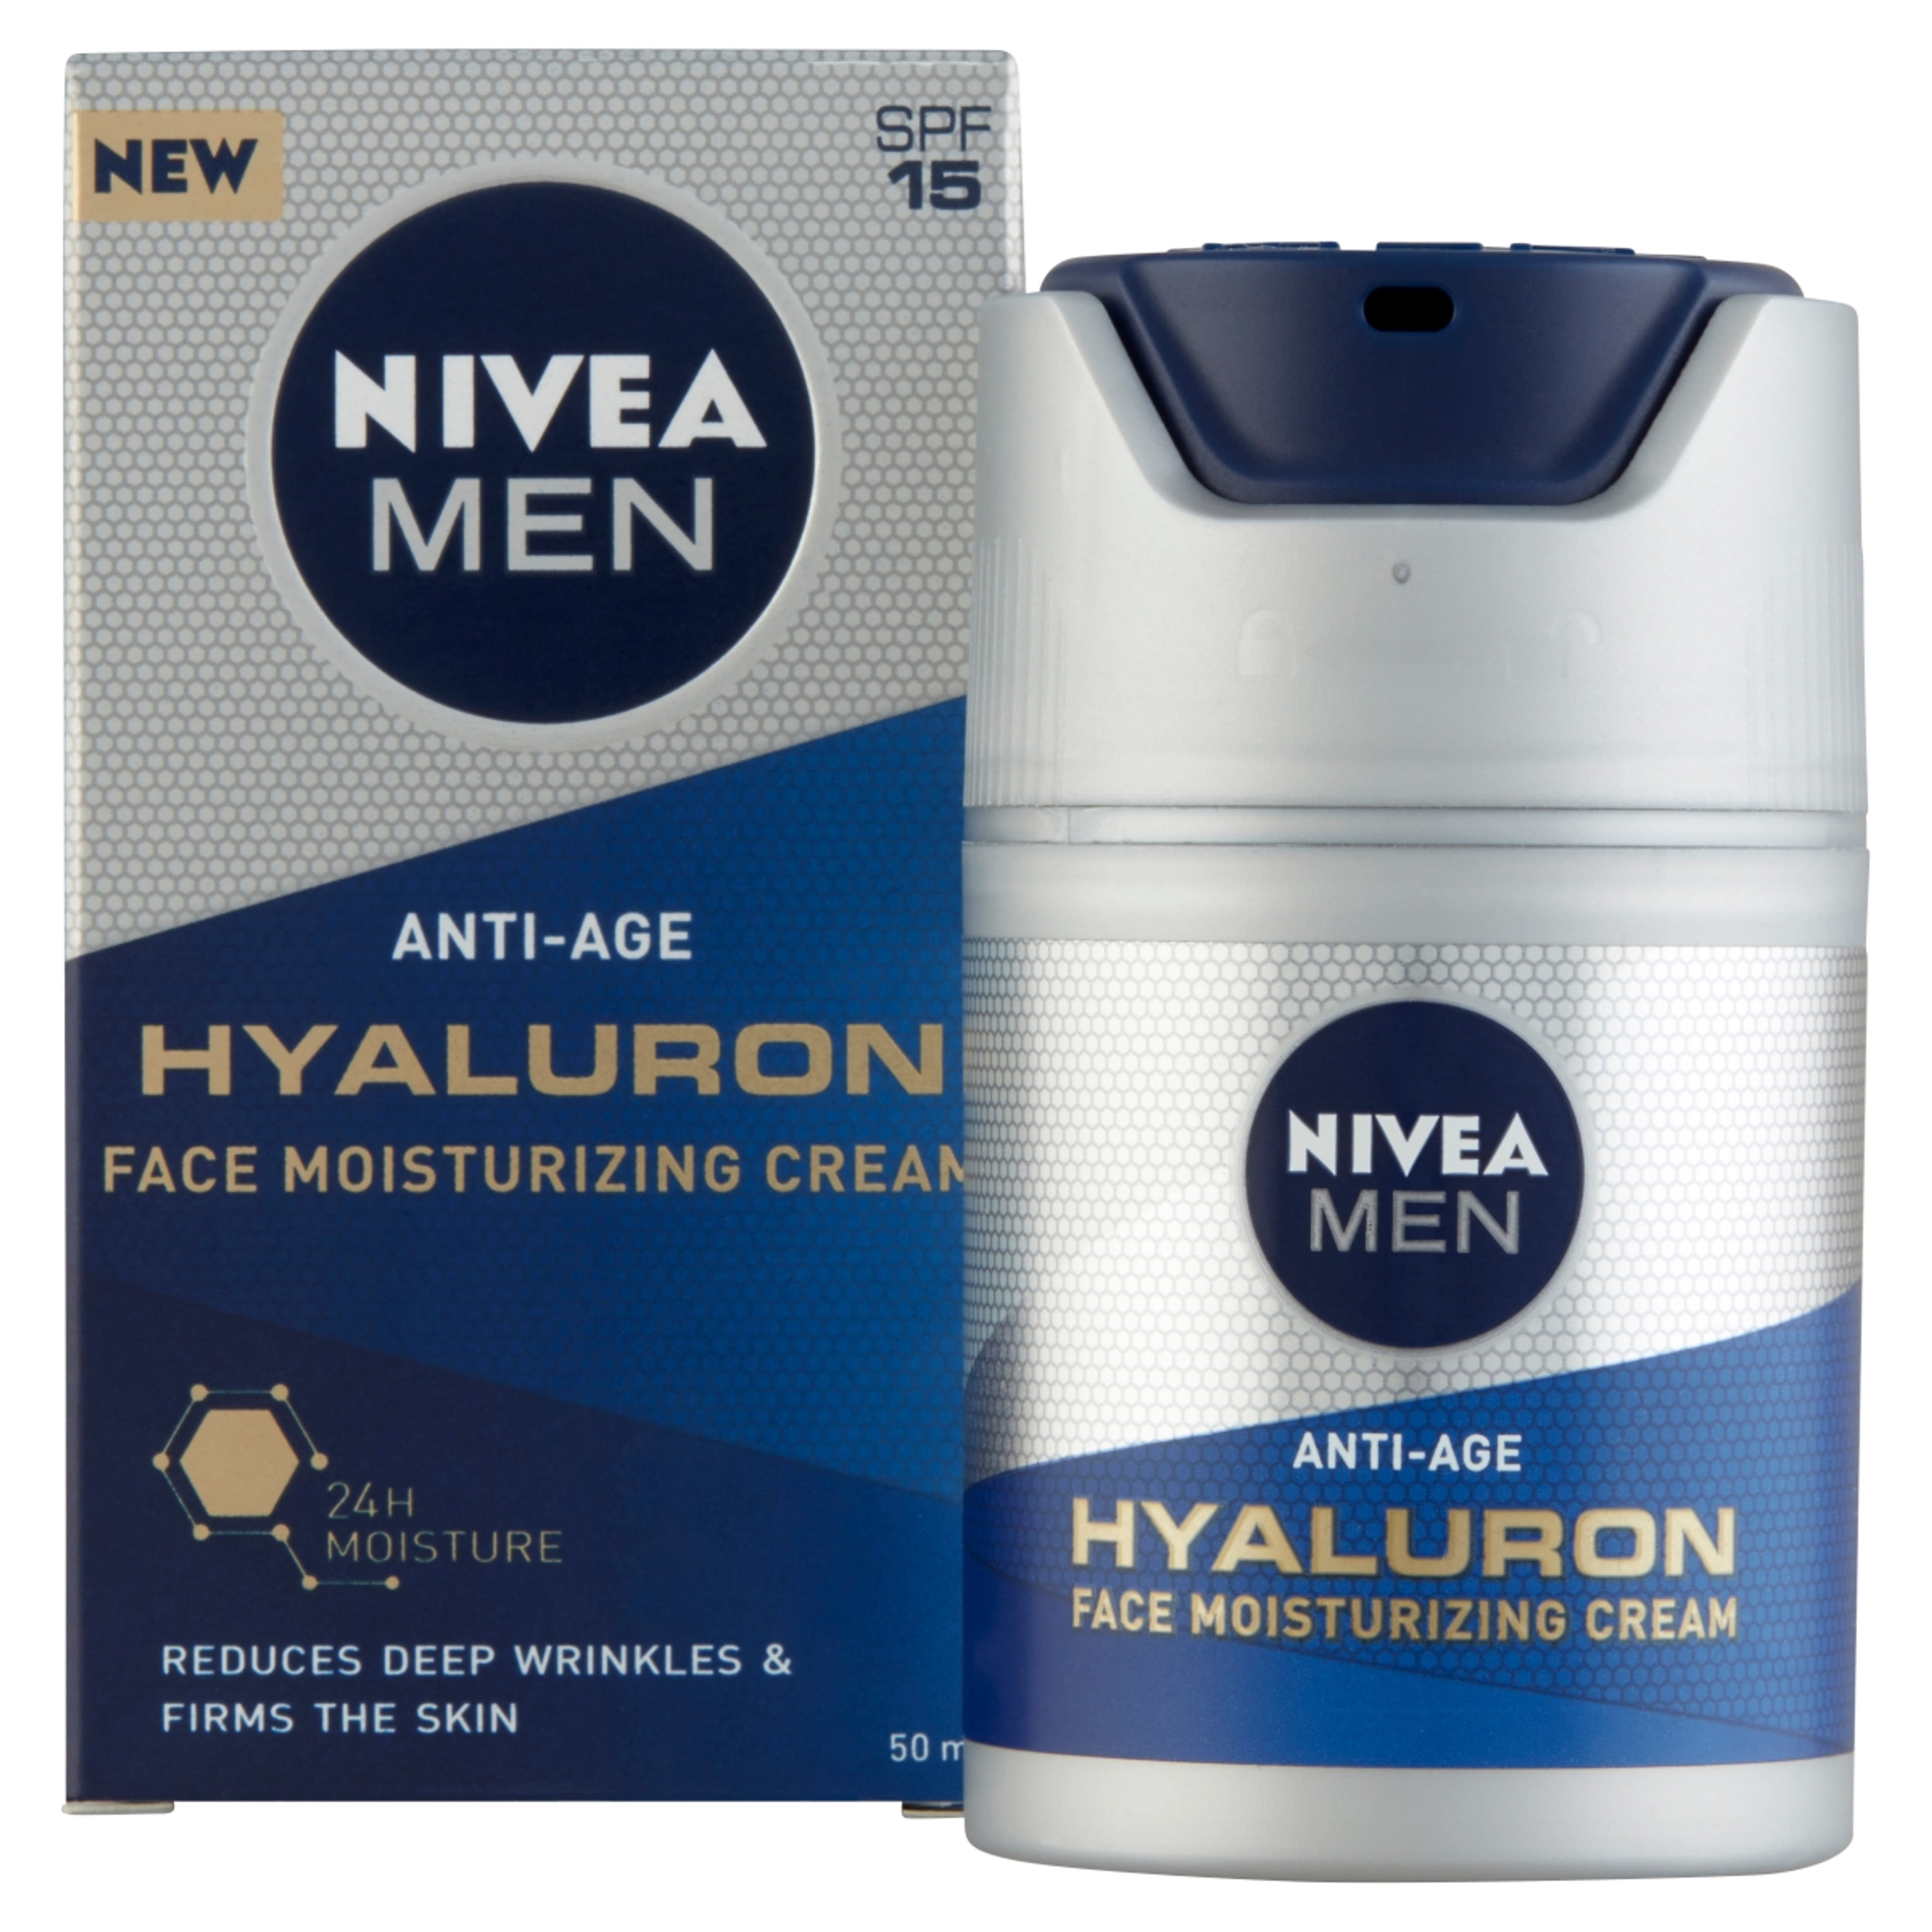 NIVEA MEN antiage hialuron arckrém - 50 ml-2